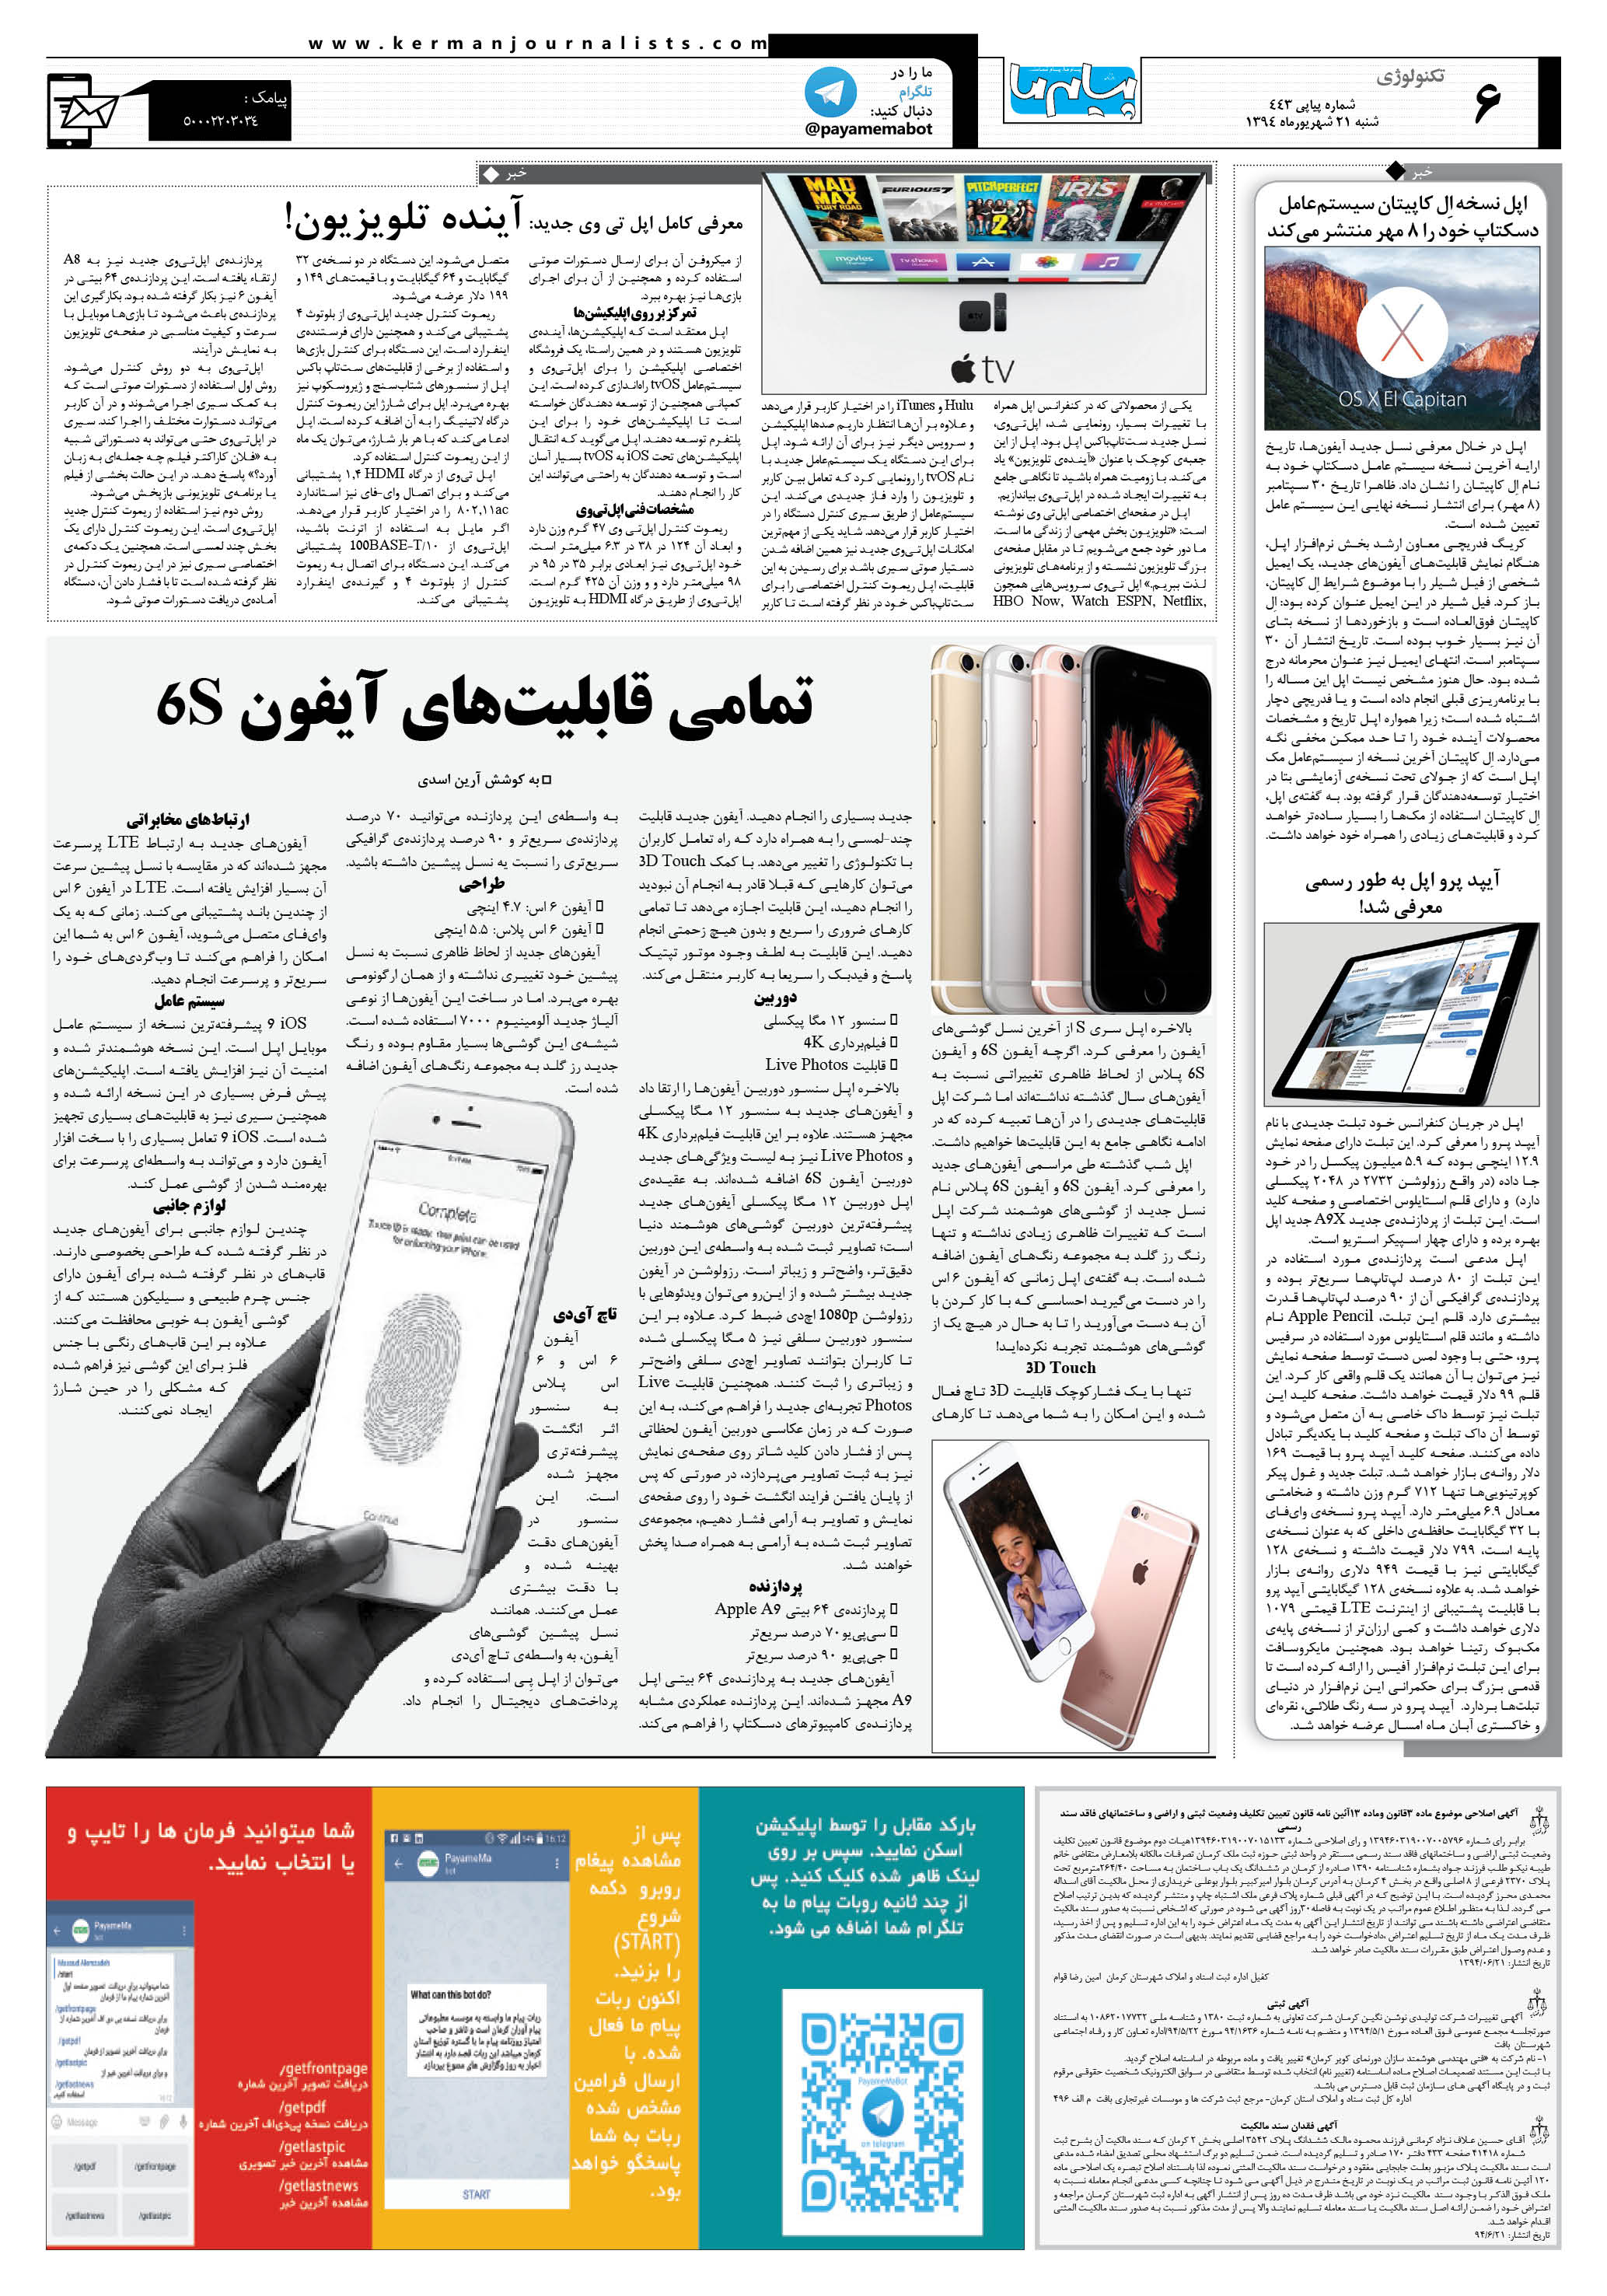 صفحه تکنولوژی شماره تکنولوژی روزنامه پیام ما